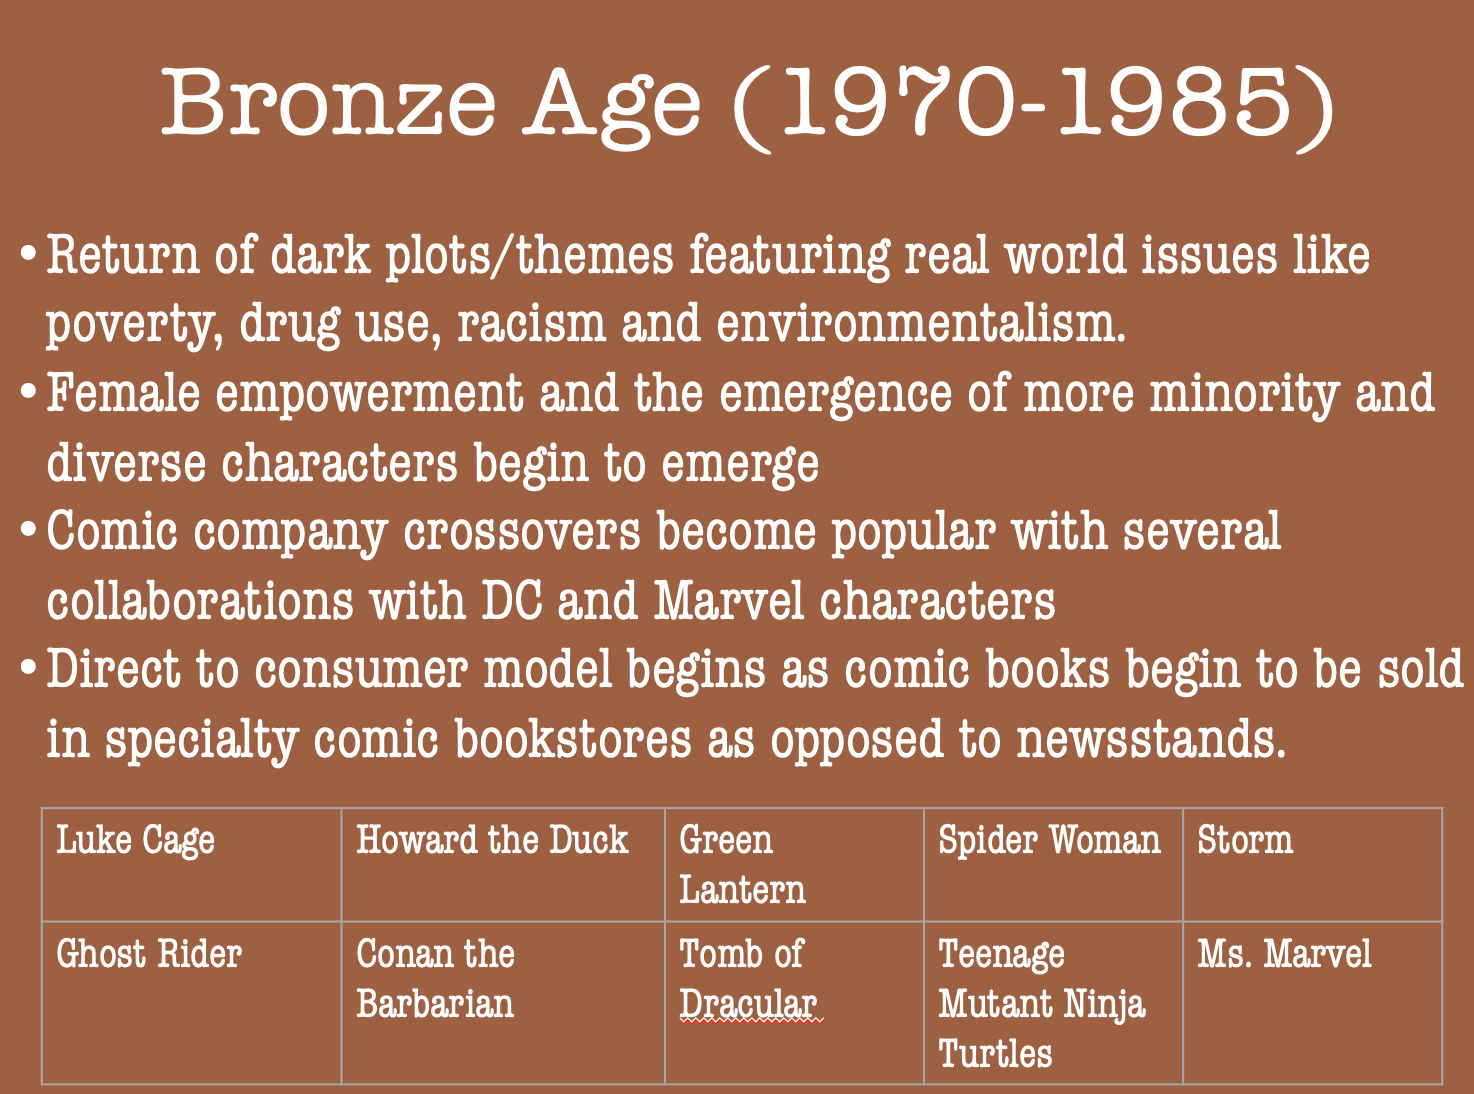 Comic books in the bronze age (1970-1985)